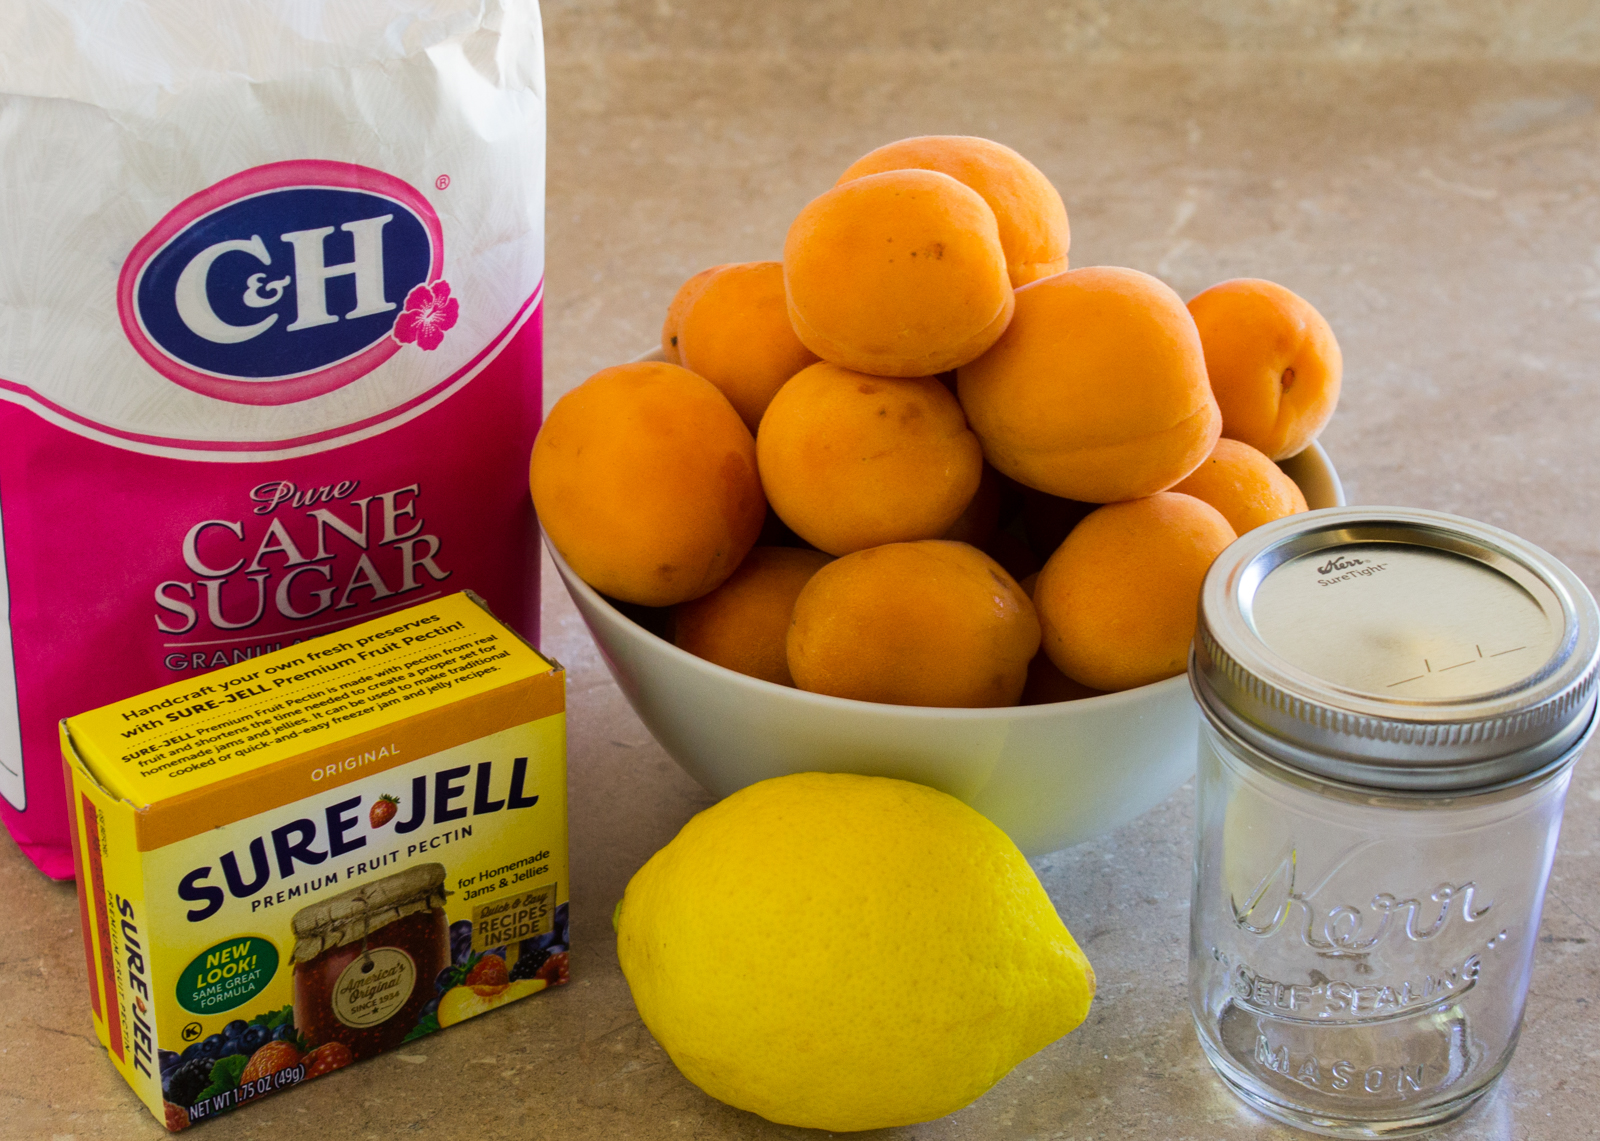 Ingredients: sugar, apricots, pectin, lemon, canning jar